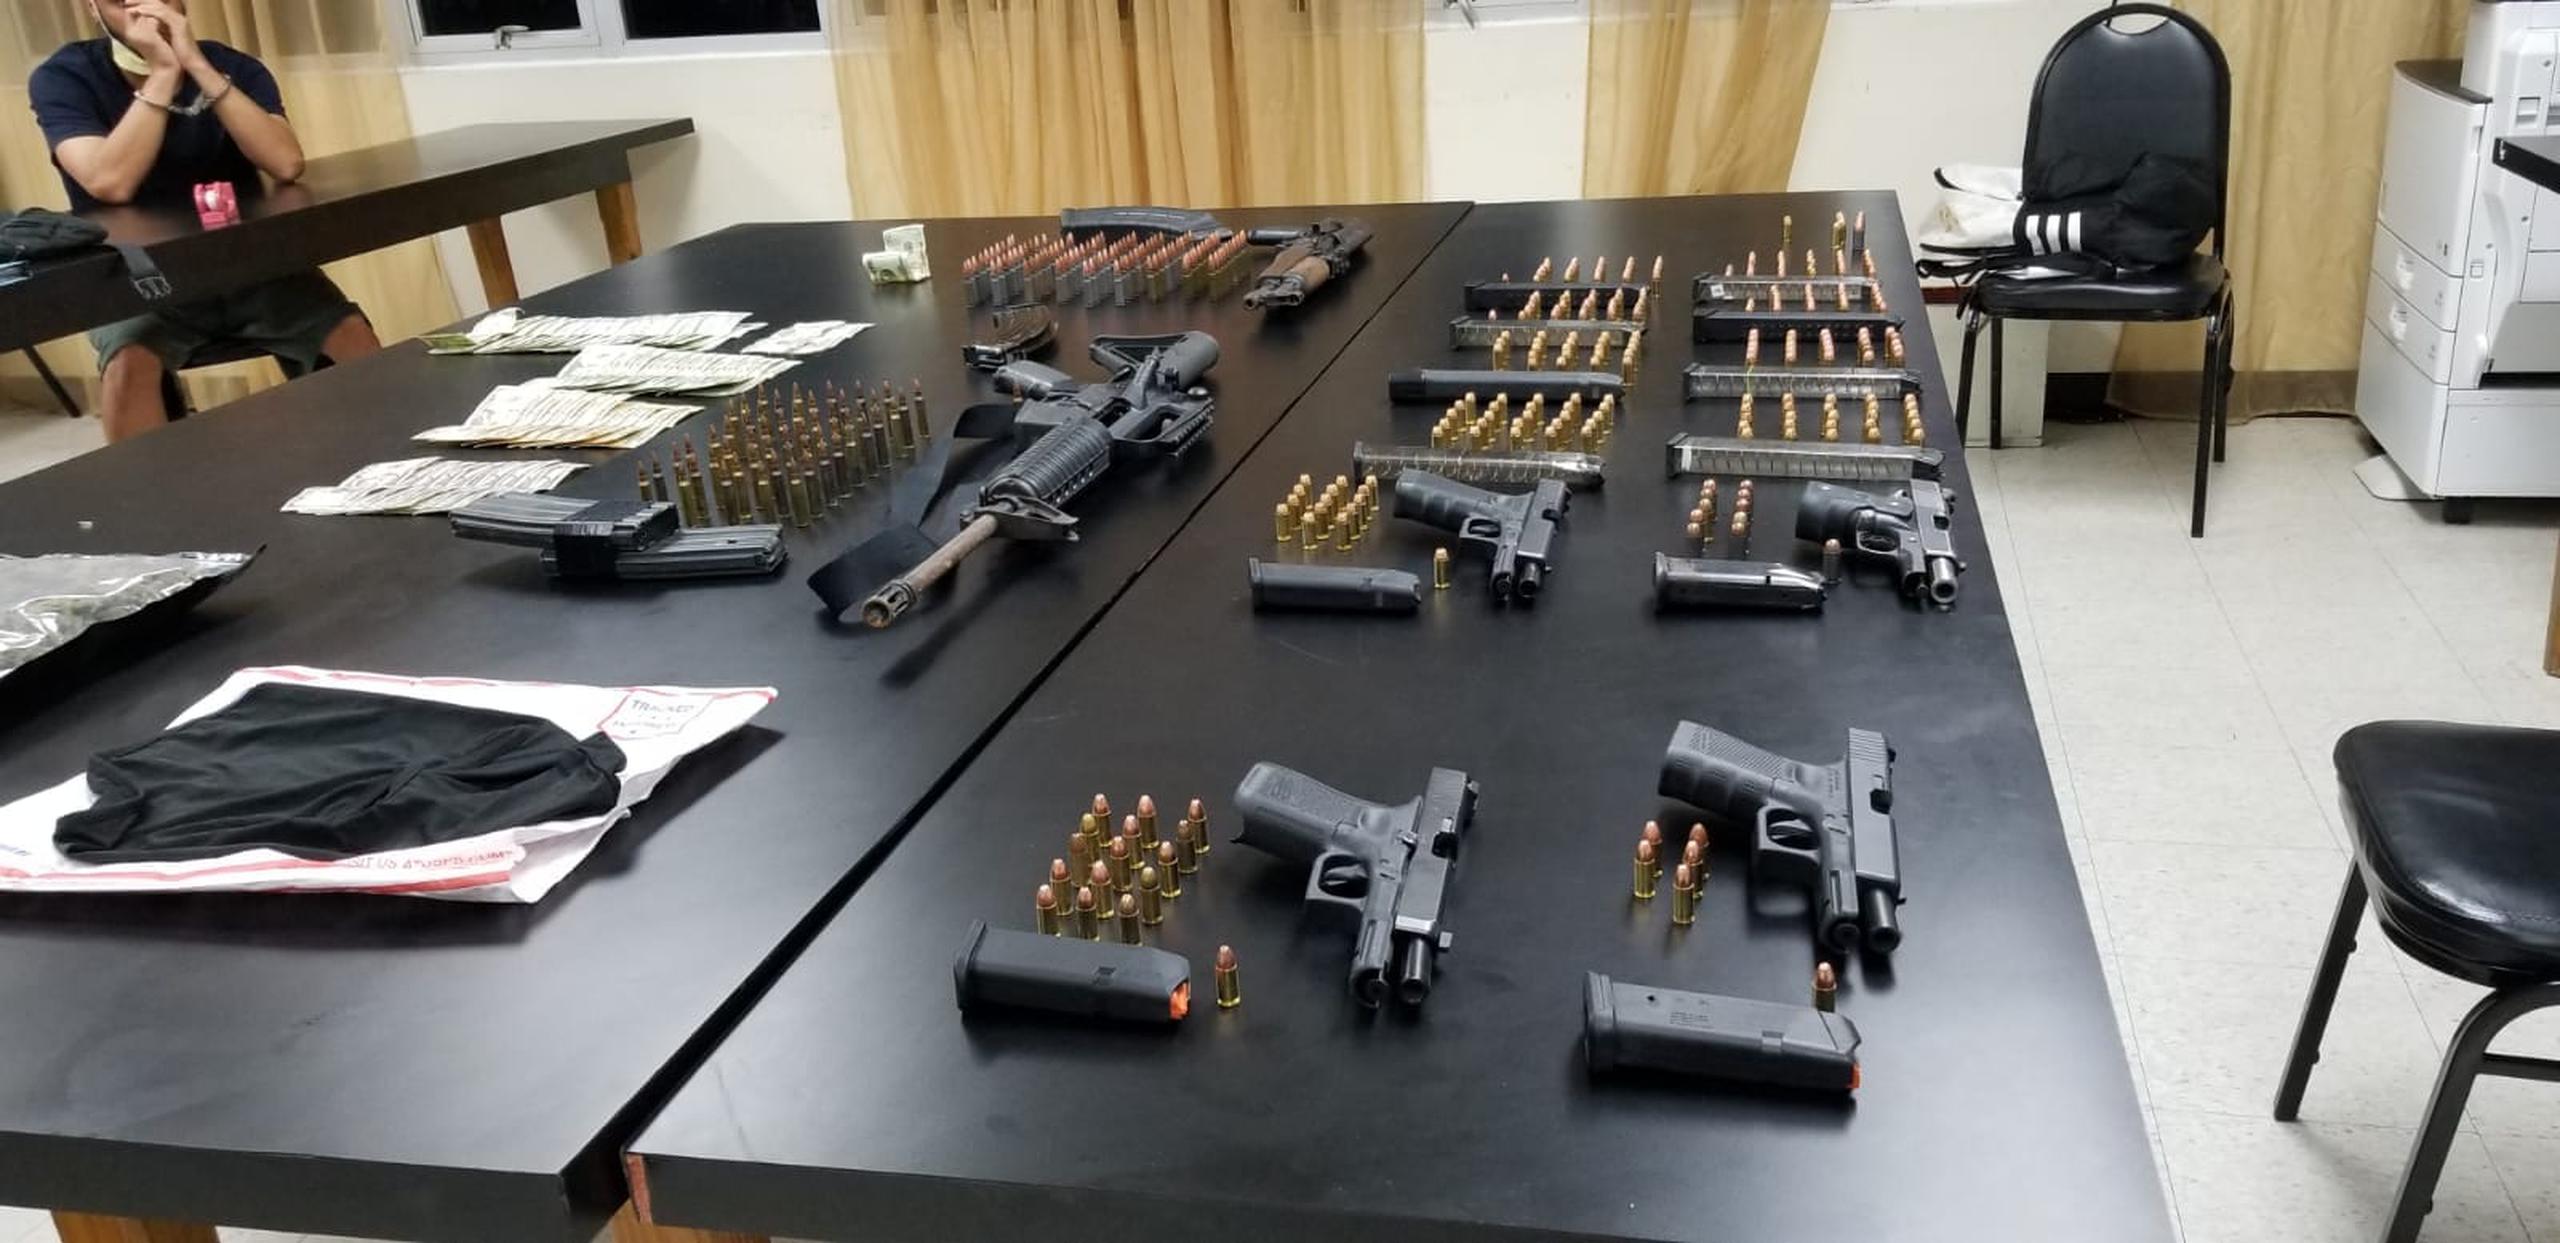 Las autoridades ocuparon pistolas, rifles, municiones y 1 libra de marihuana a un individuo sospechoso de dispararle a su expareja en Carolina.